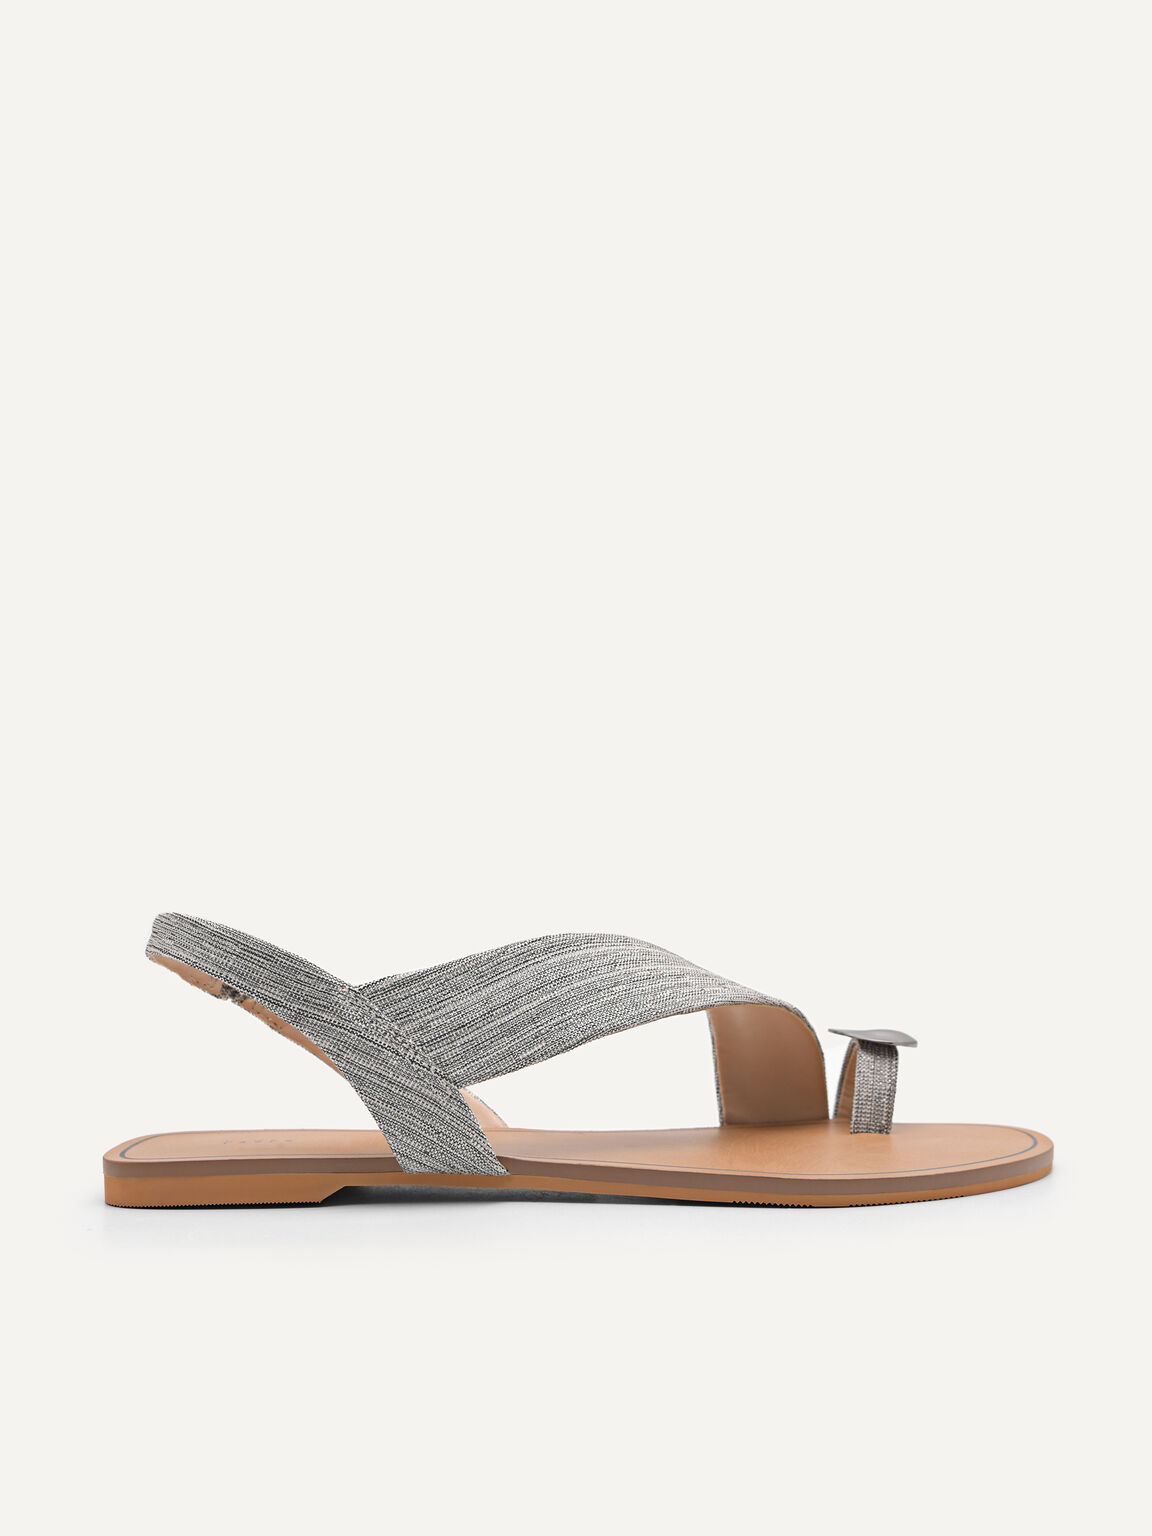 Embellished Toe-Ring Slingback Sandals, Silver